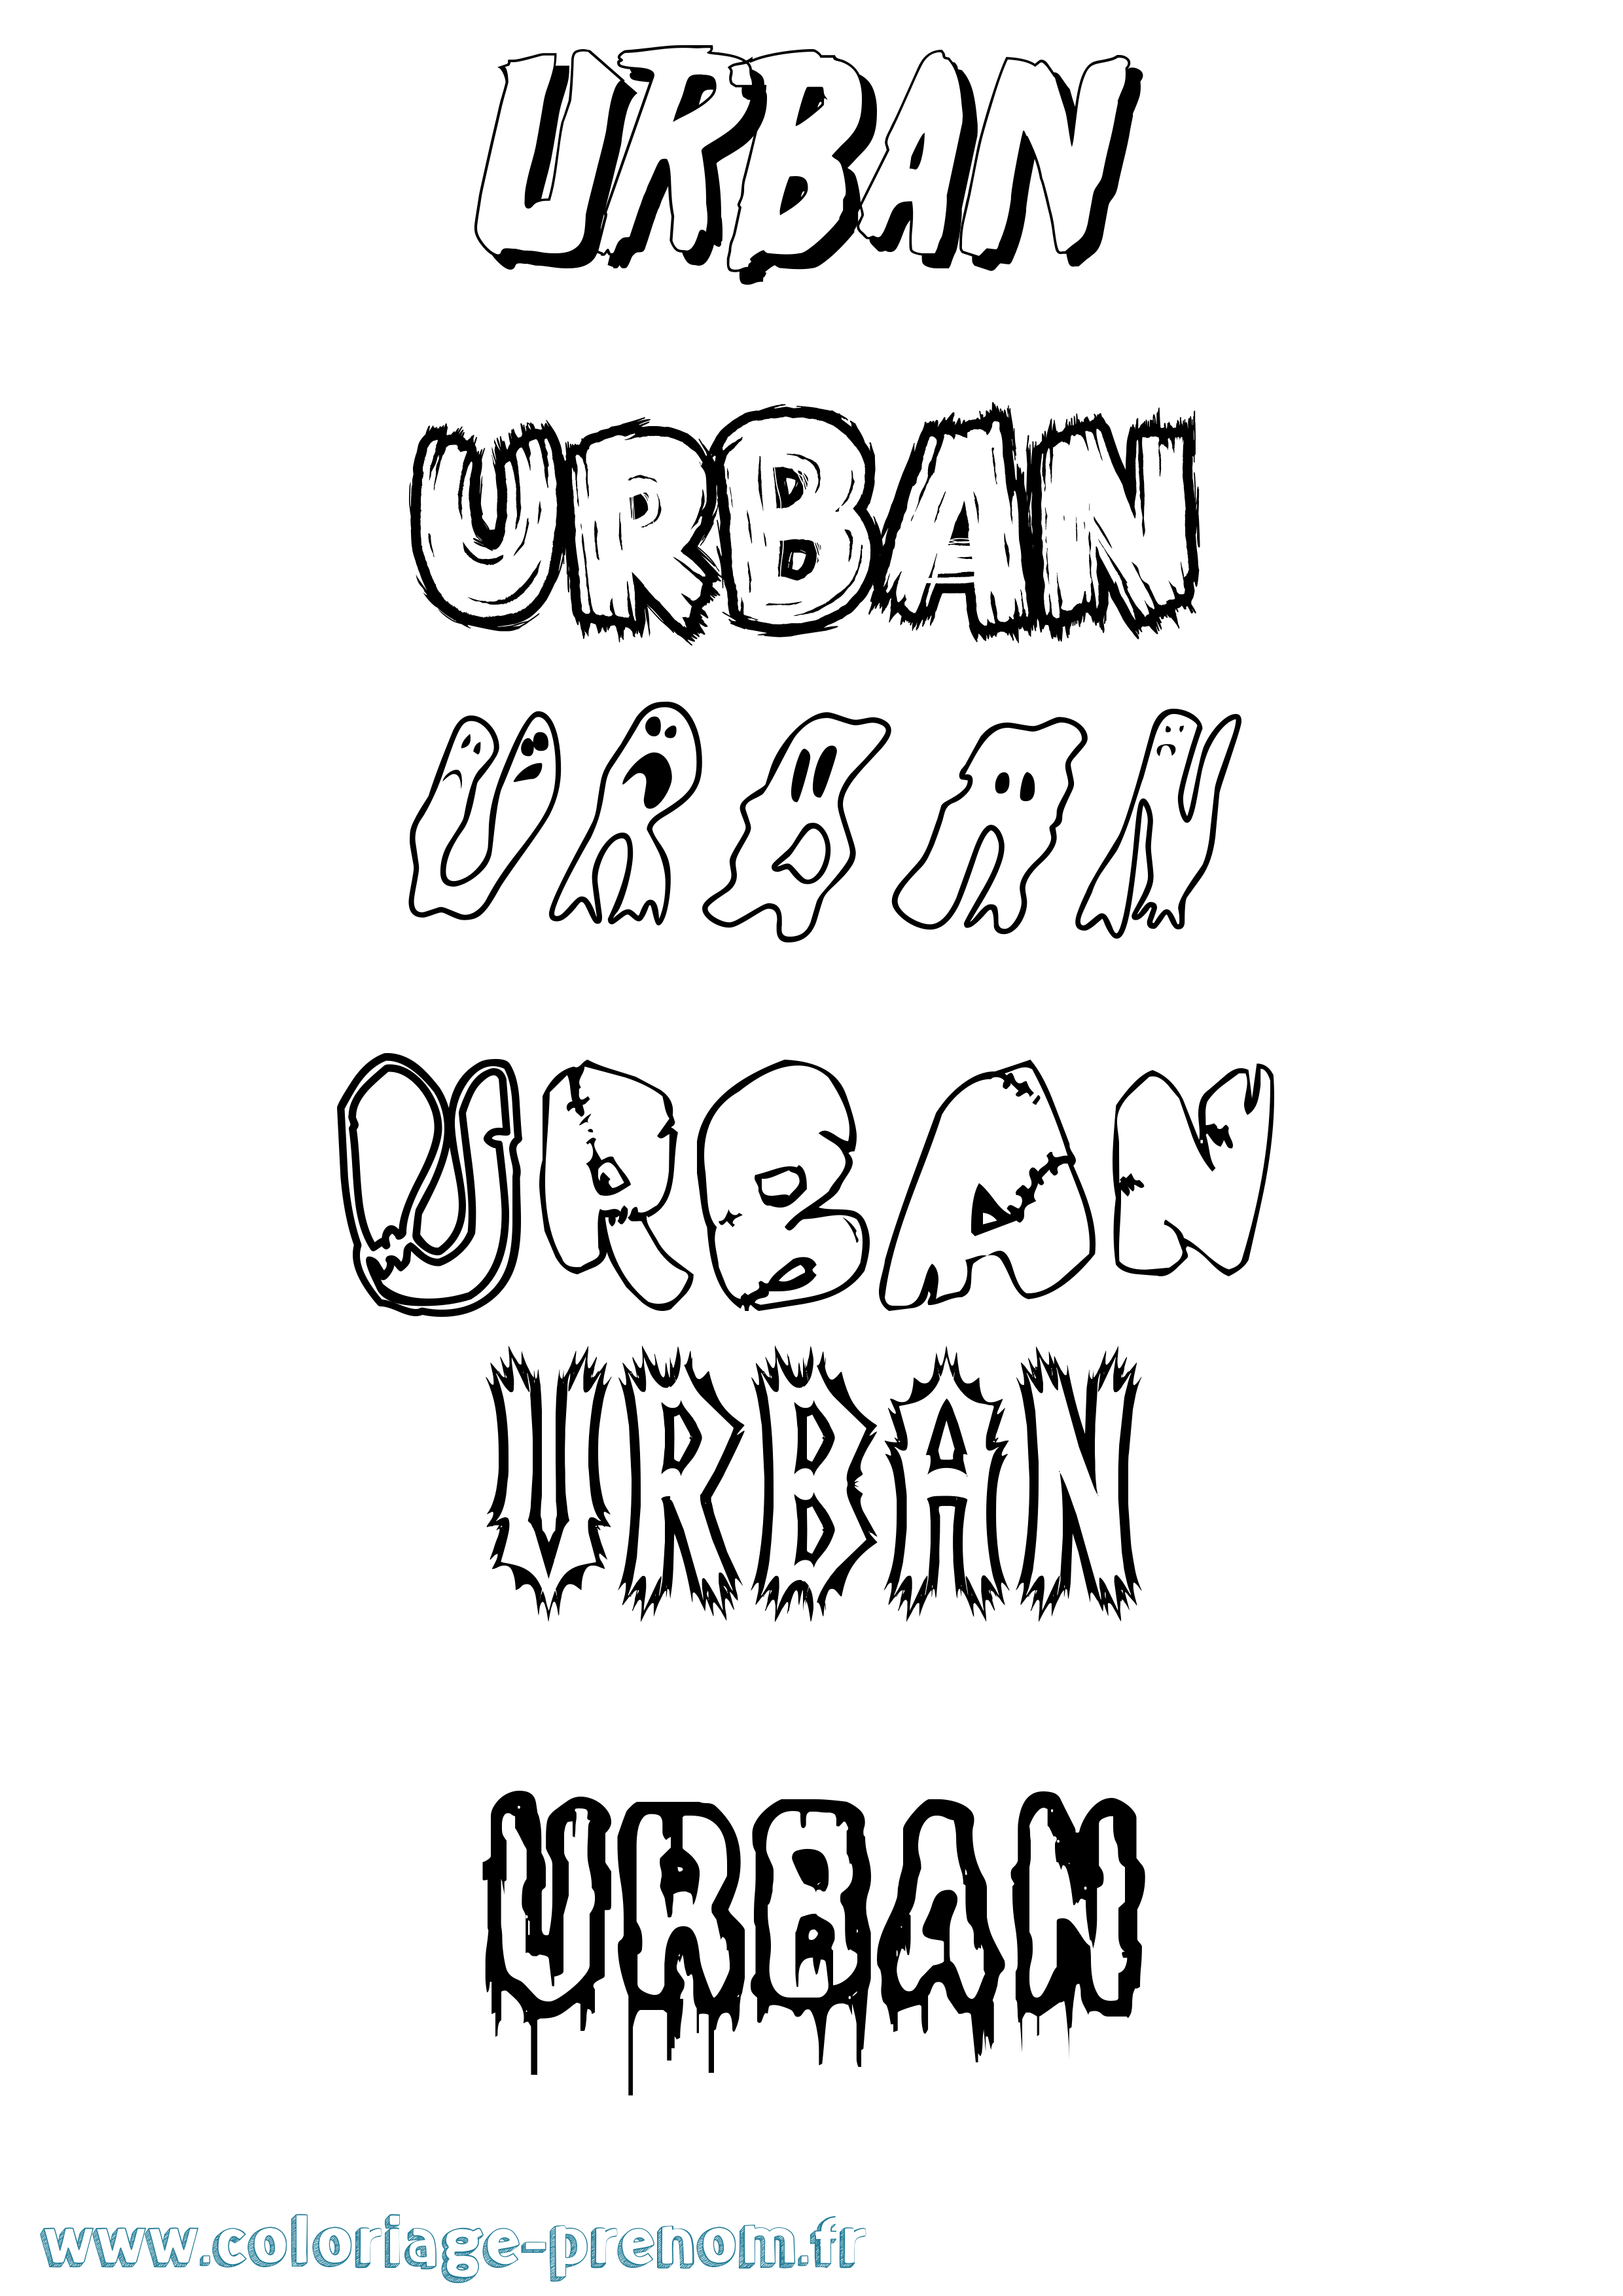 Coloriage prénom Urban Frisson